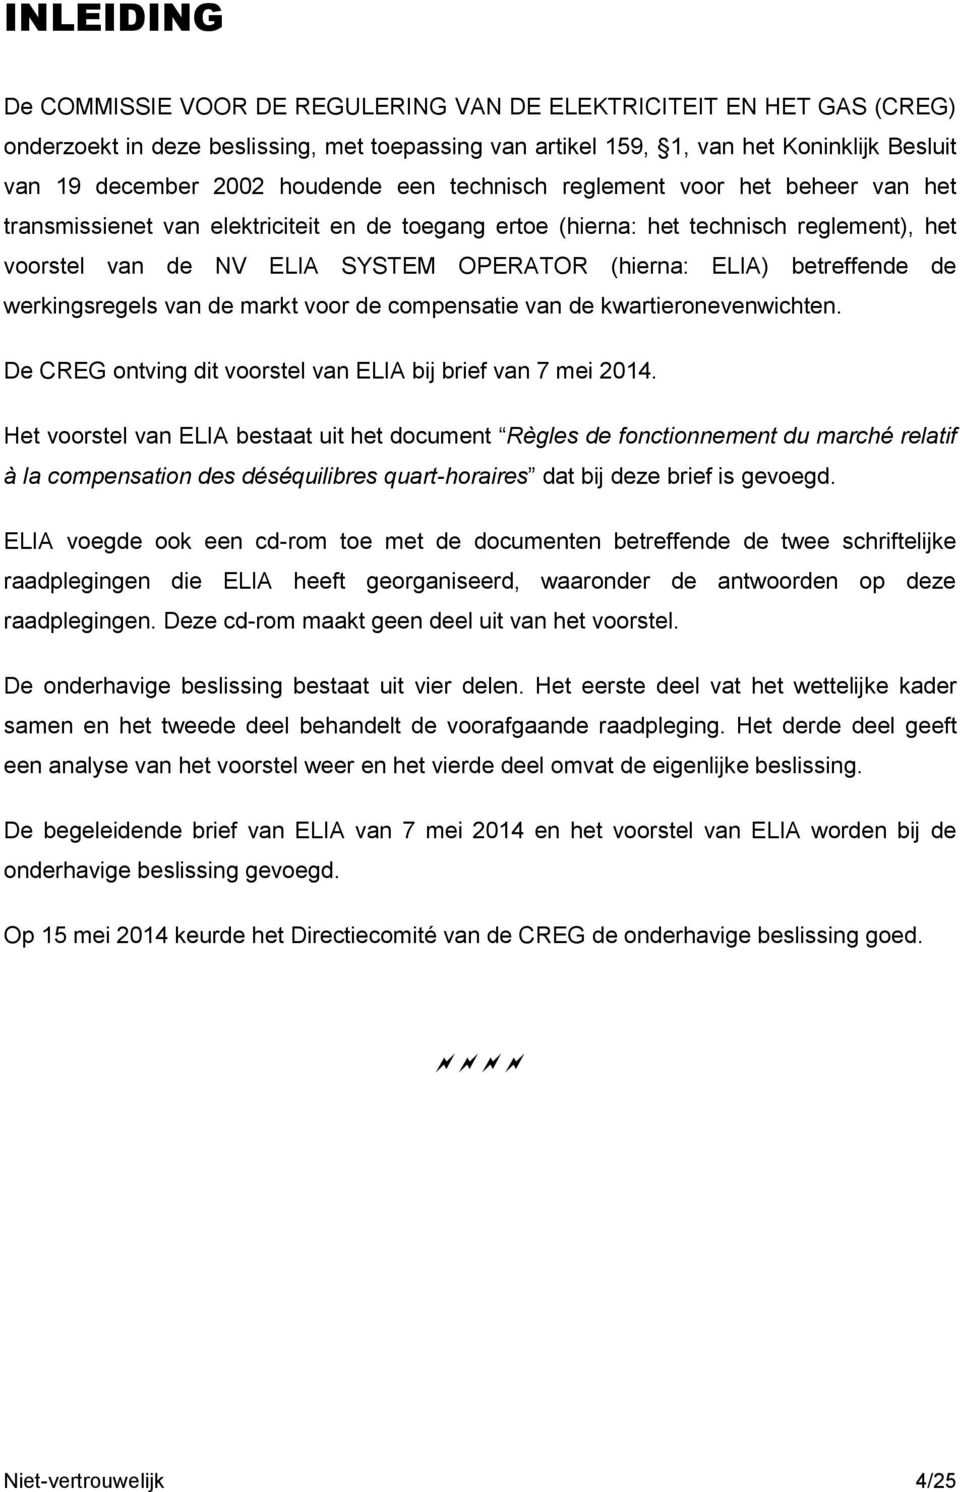 ELIA) betreffende de werkingsregels van de markt voor de compensatie van de kwartieronevenwichten. De CREG ontving dit voorstel van ELIA bij brief van 7 mei 2014.